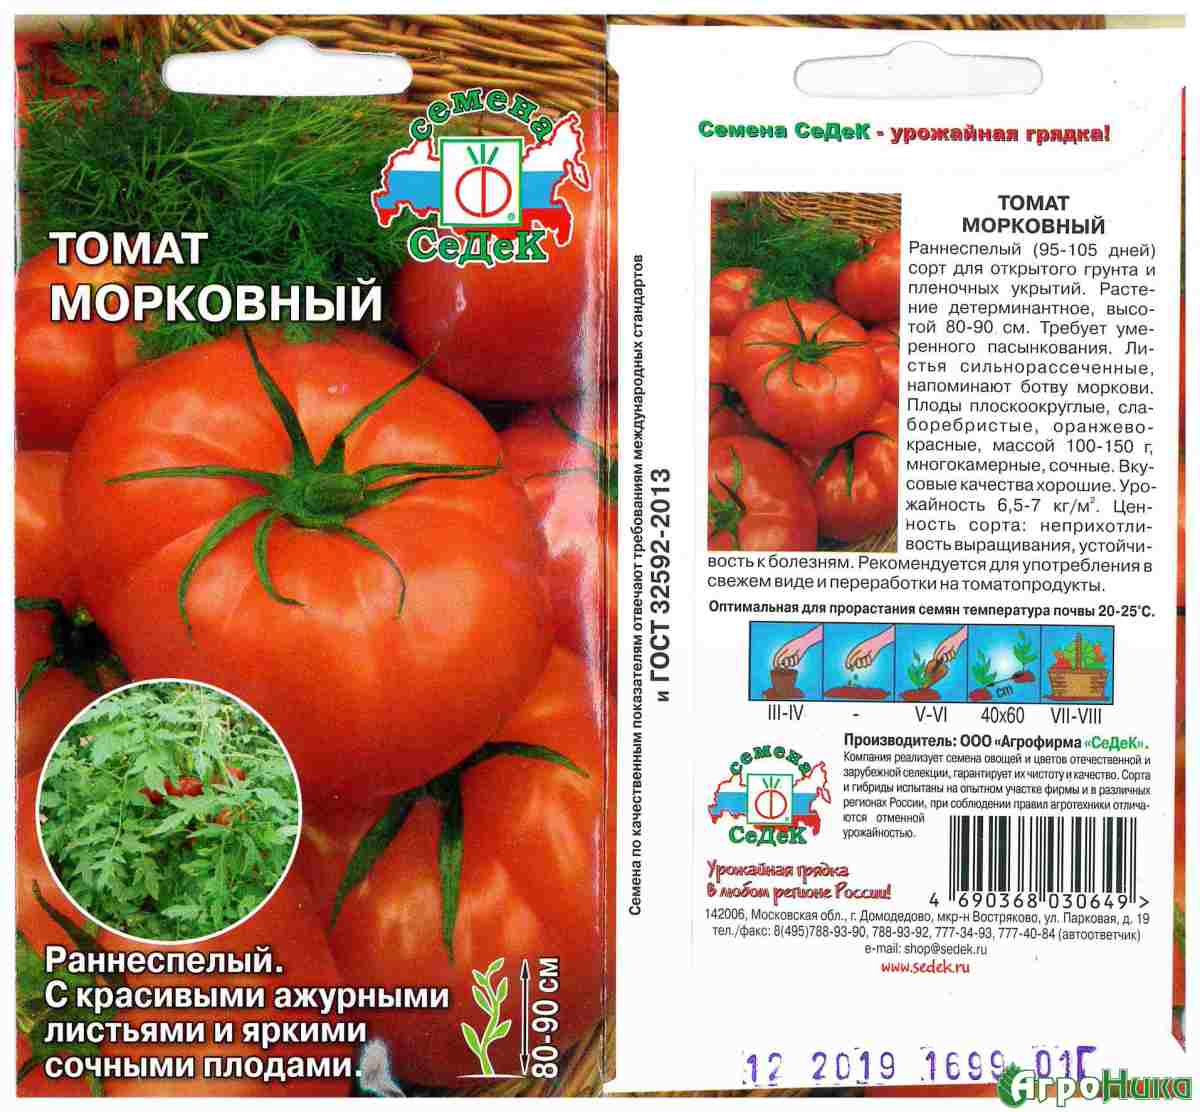 Характеристика томата Цыган и описание вкусовых качеств помидора